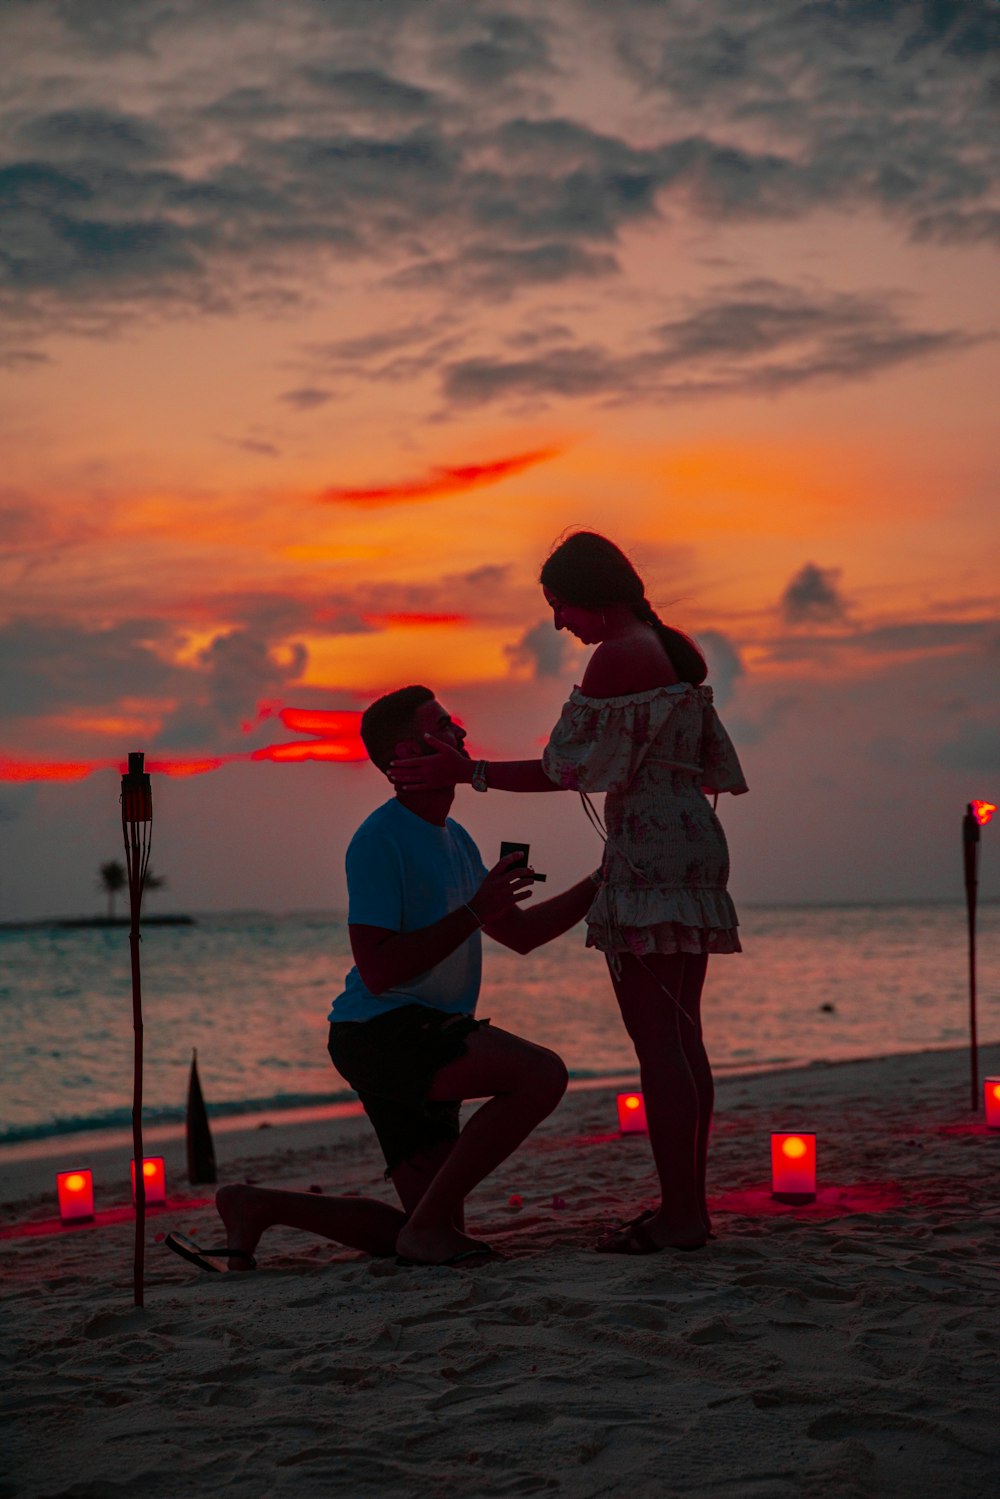 homme agenouillé devant une femme au bord de la plage pendant l’heure dorée